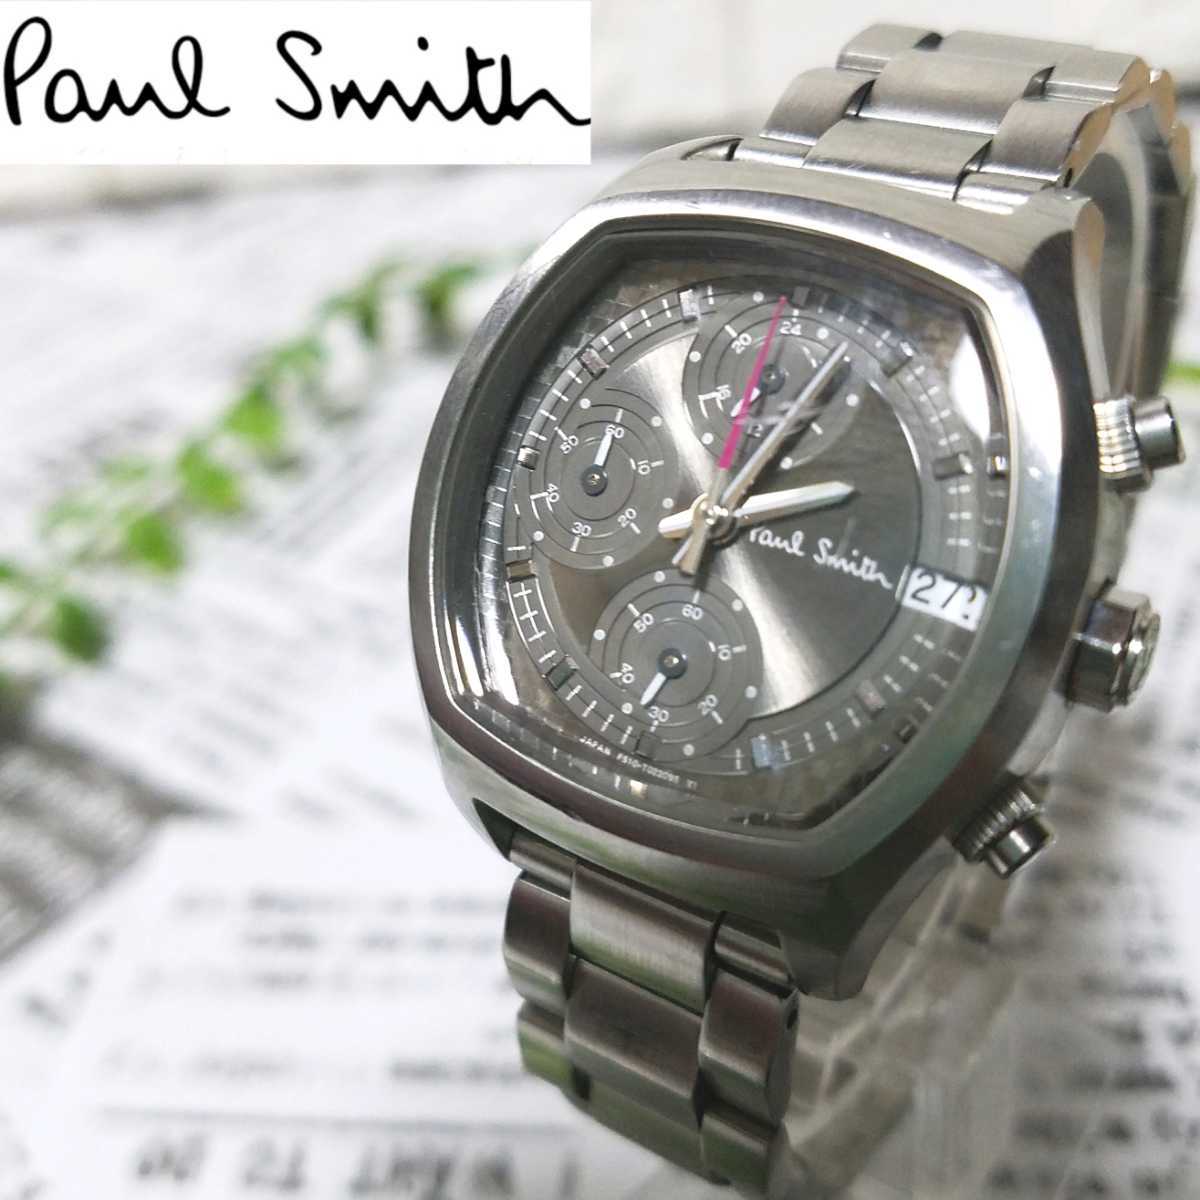 総合福袋 Smith Paul ポールスミス 「21923」 腕時計 メンズ デイト